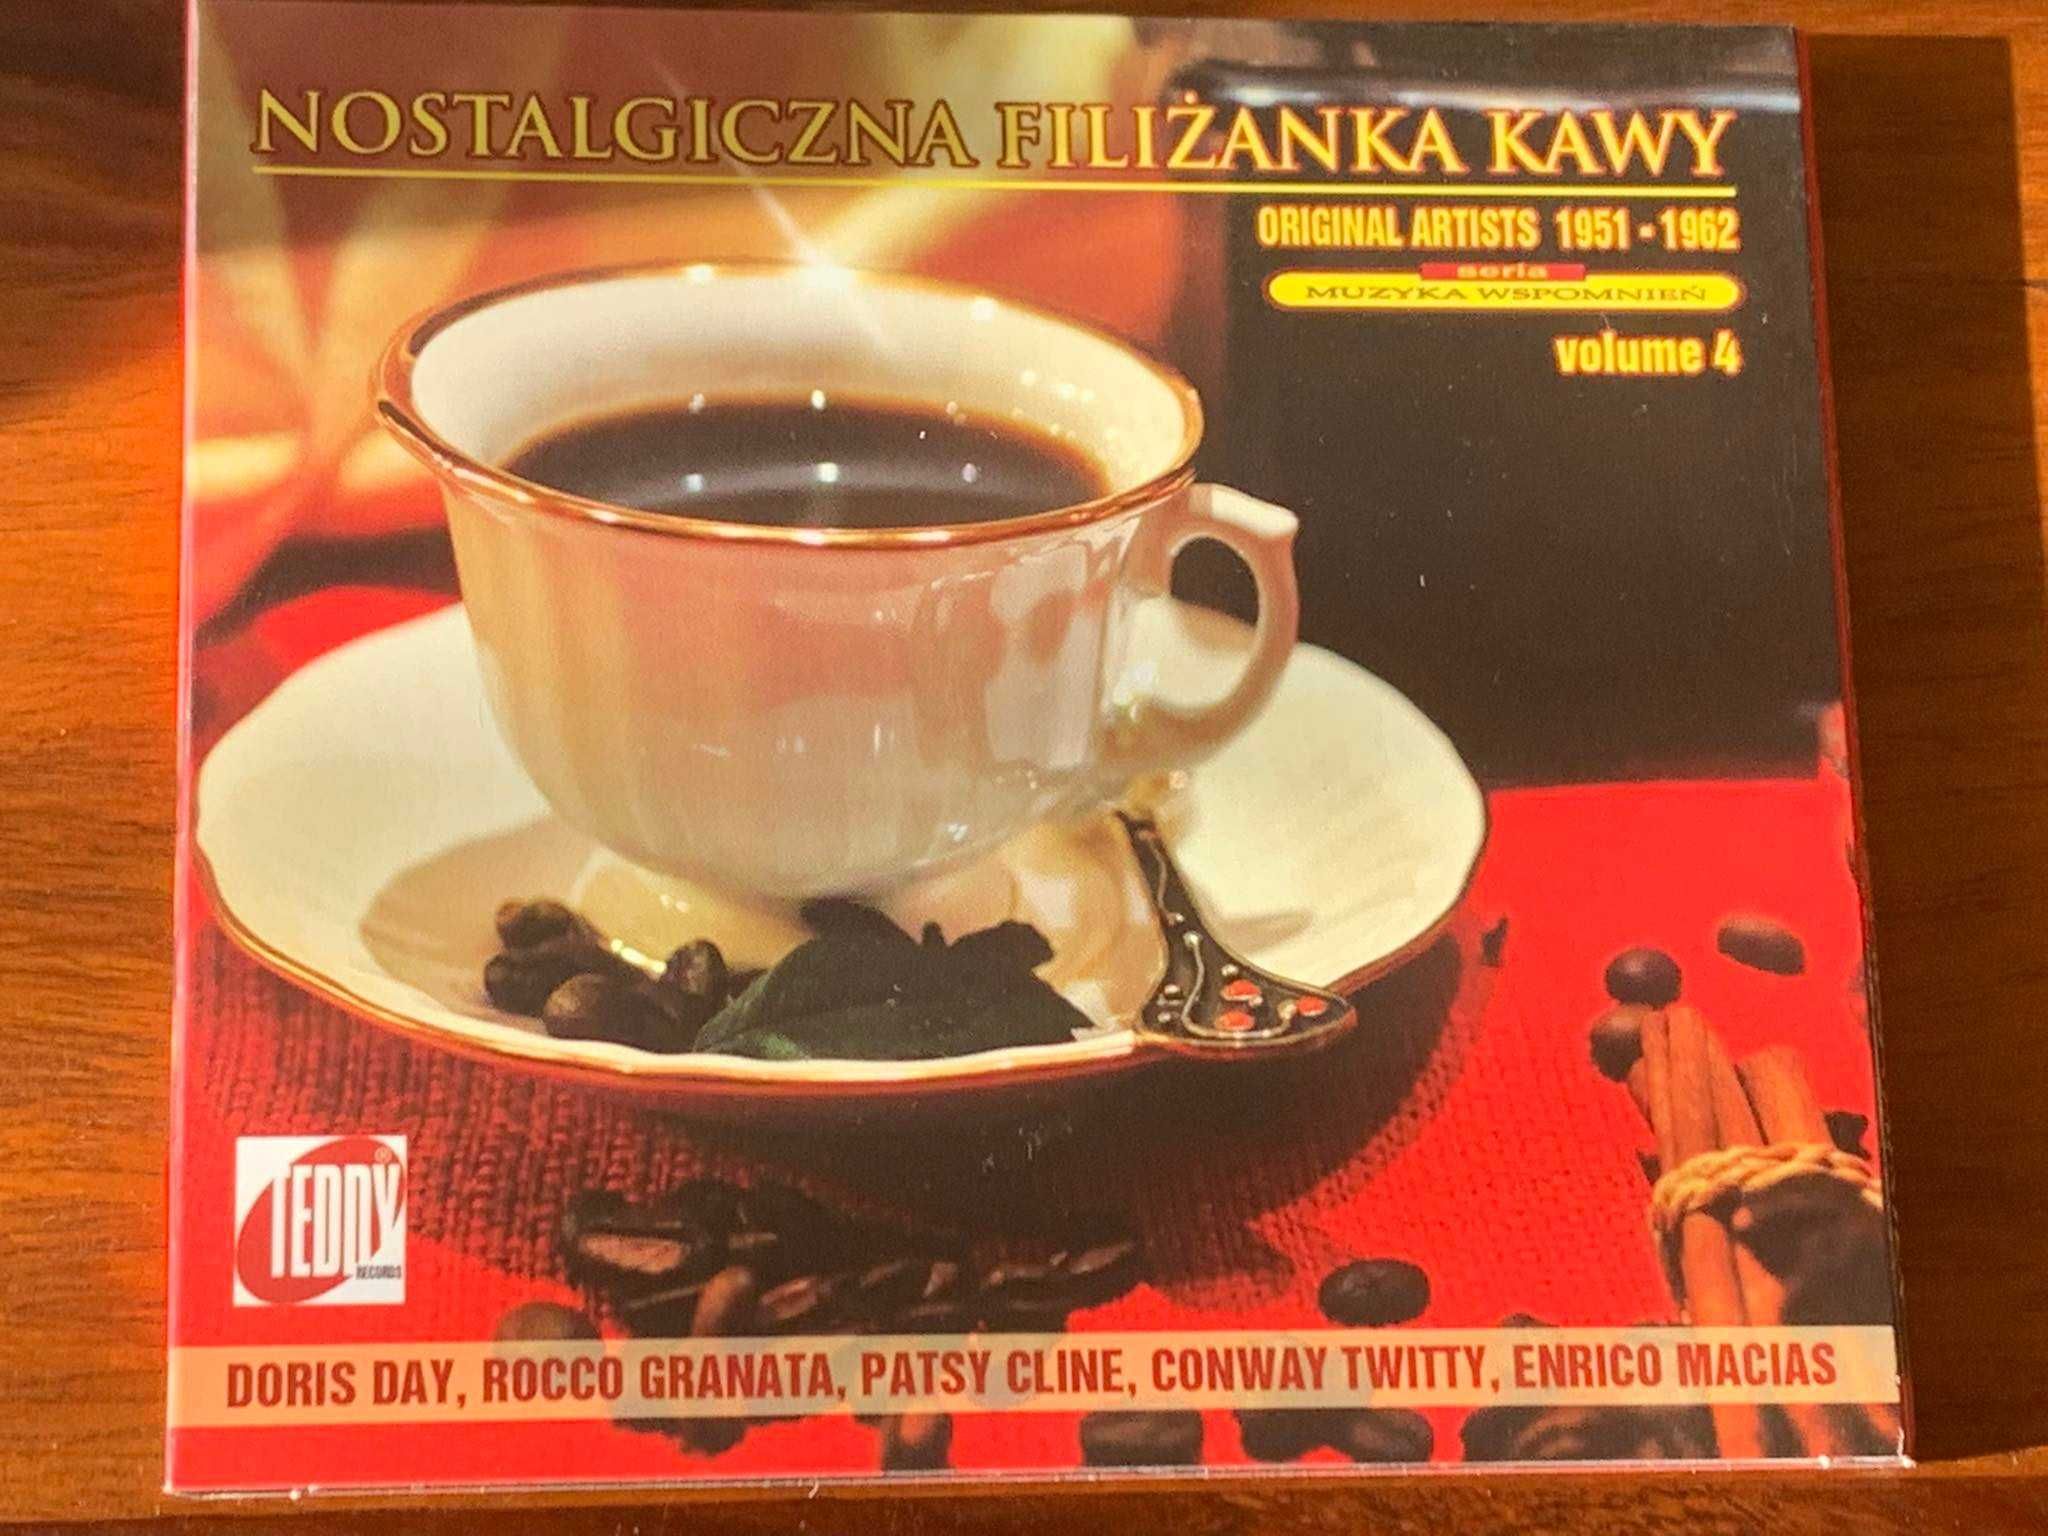 Nostalgiczna Filiżanka Kawy vol.4 - 1951/1962 - CD - stan EX+!